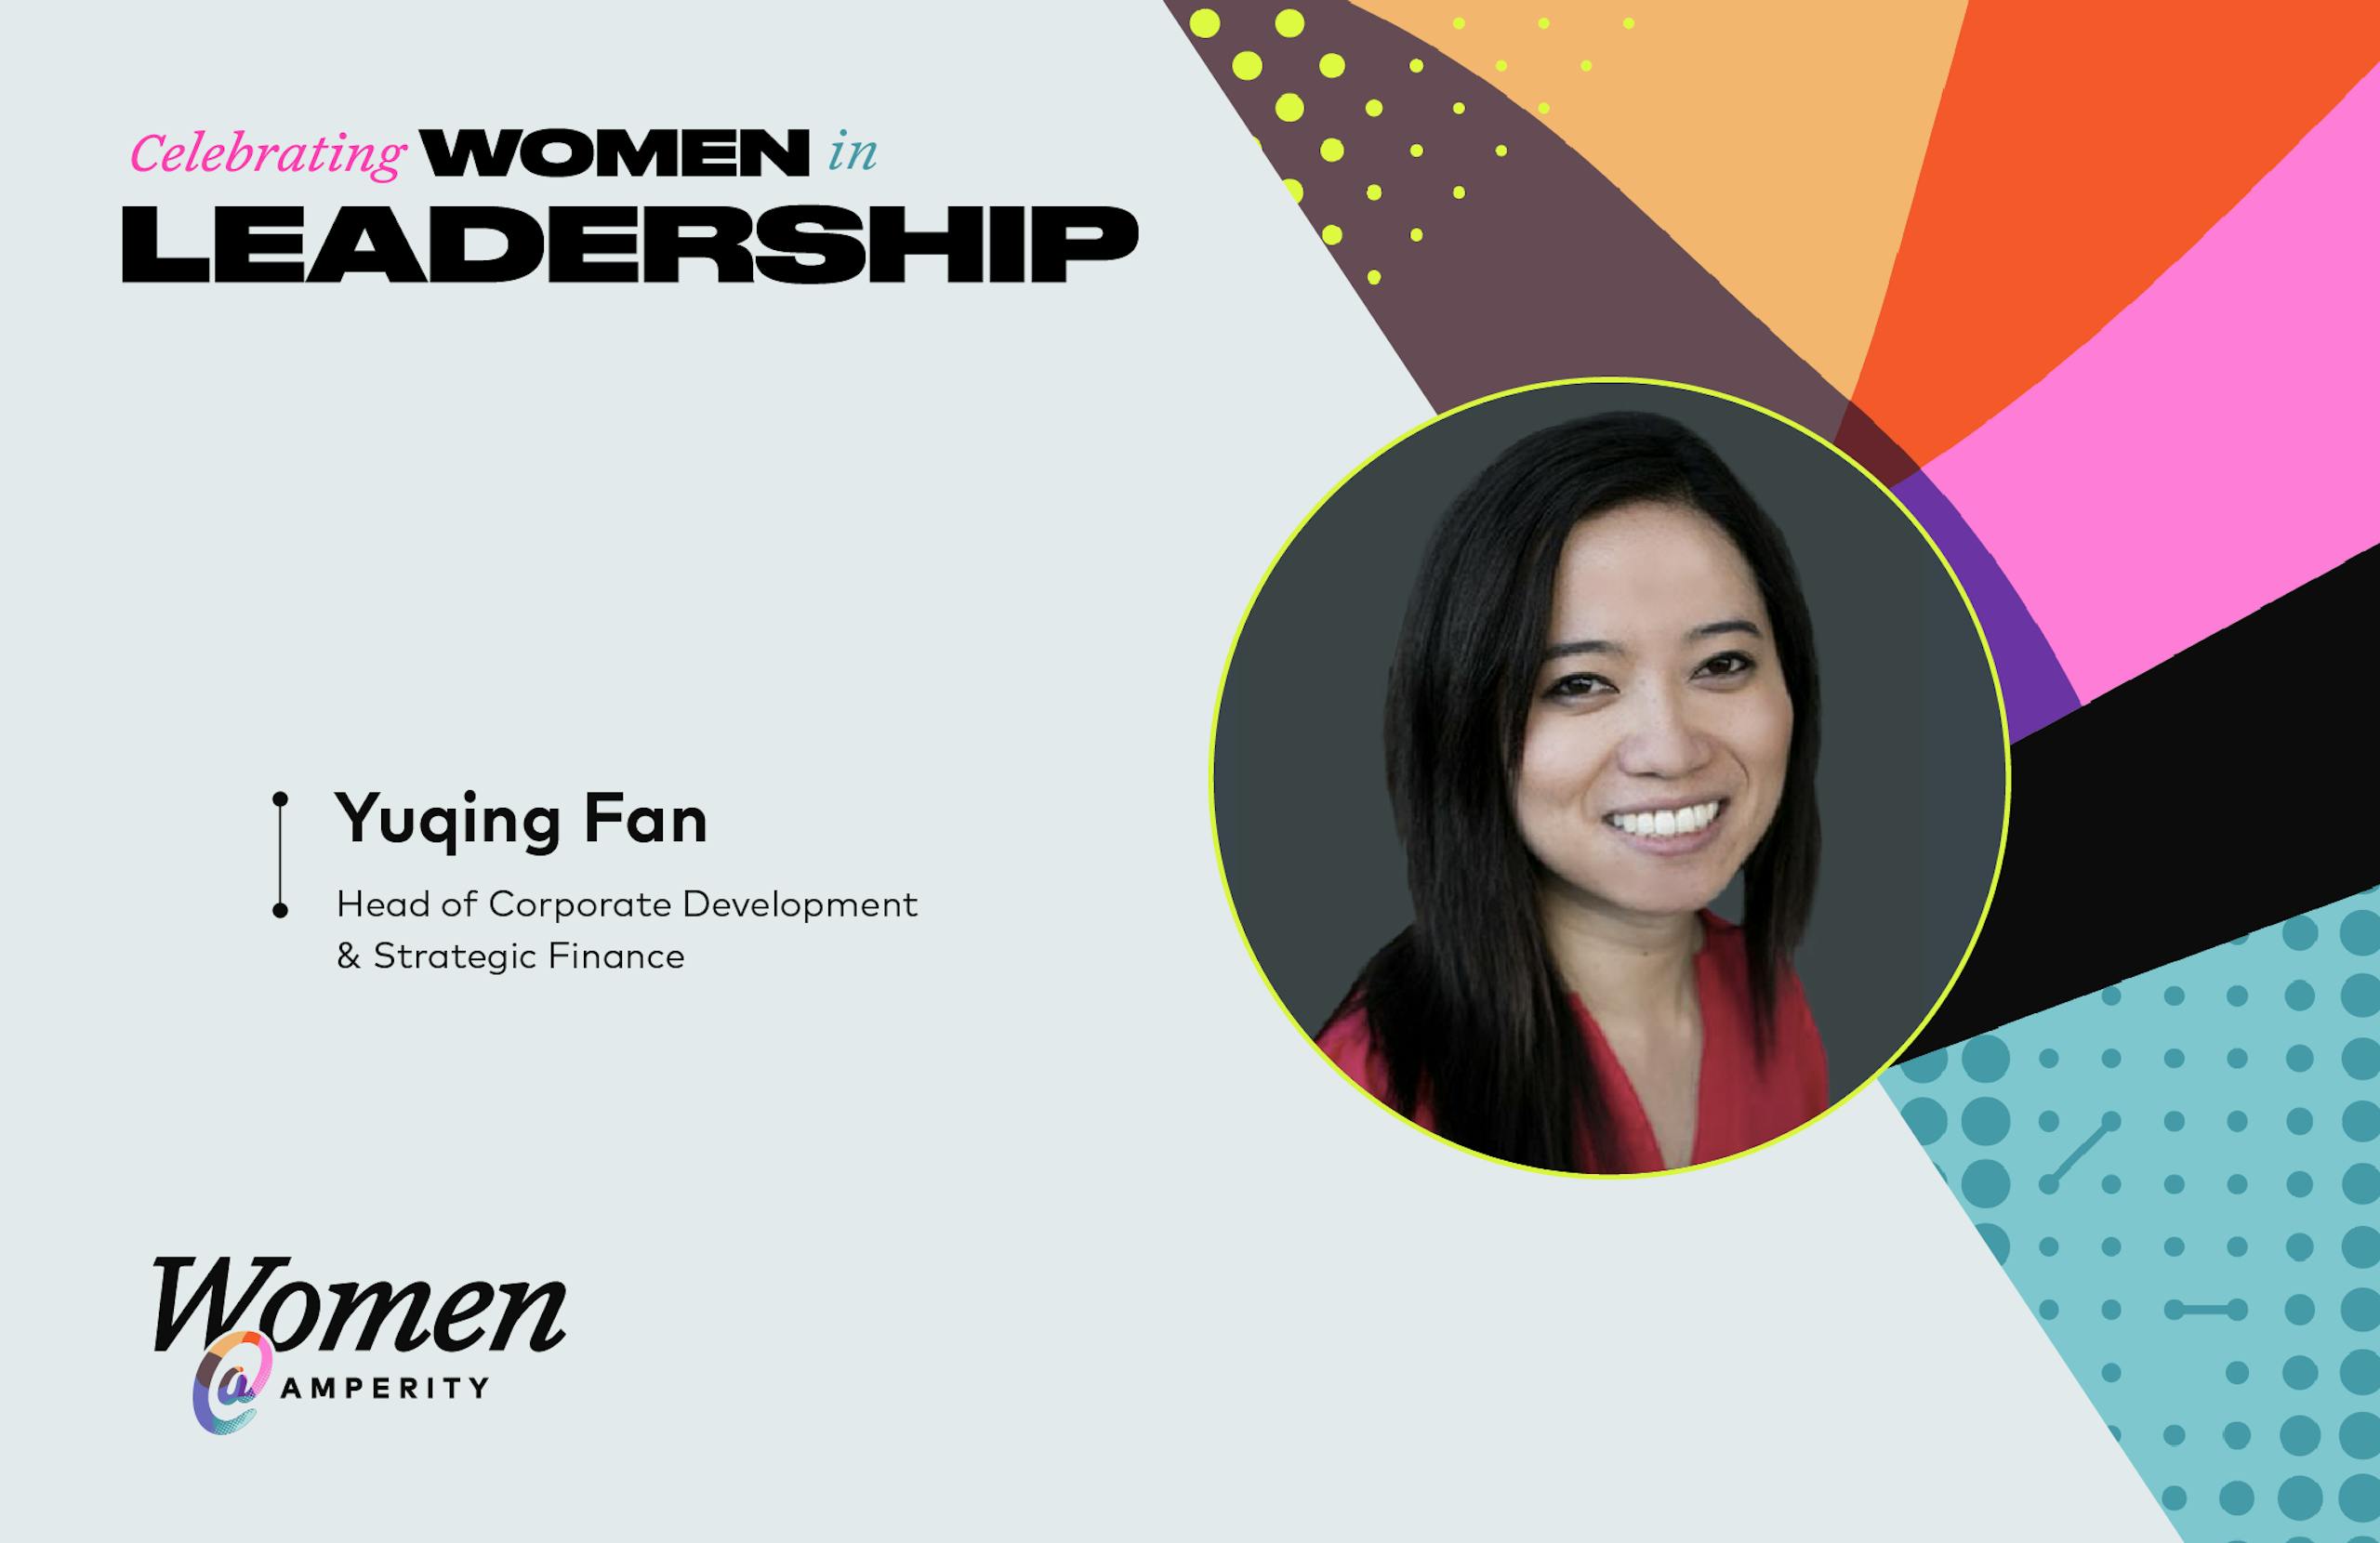 Celebrating women in leadership: Yuqing Fan, Head of Corp Dev & Strategic Finance at Amperity